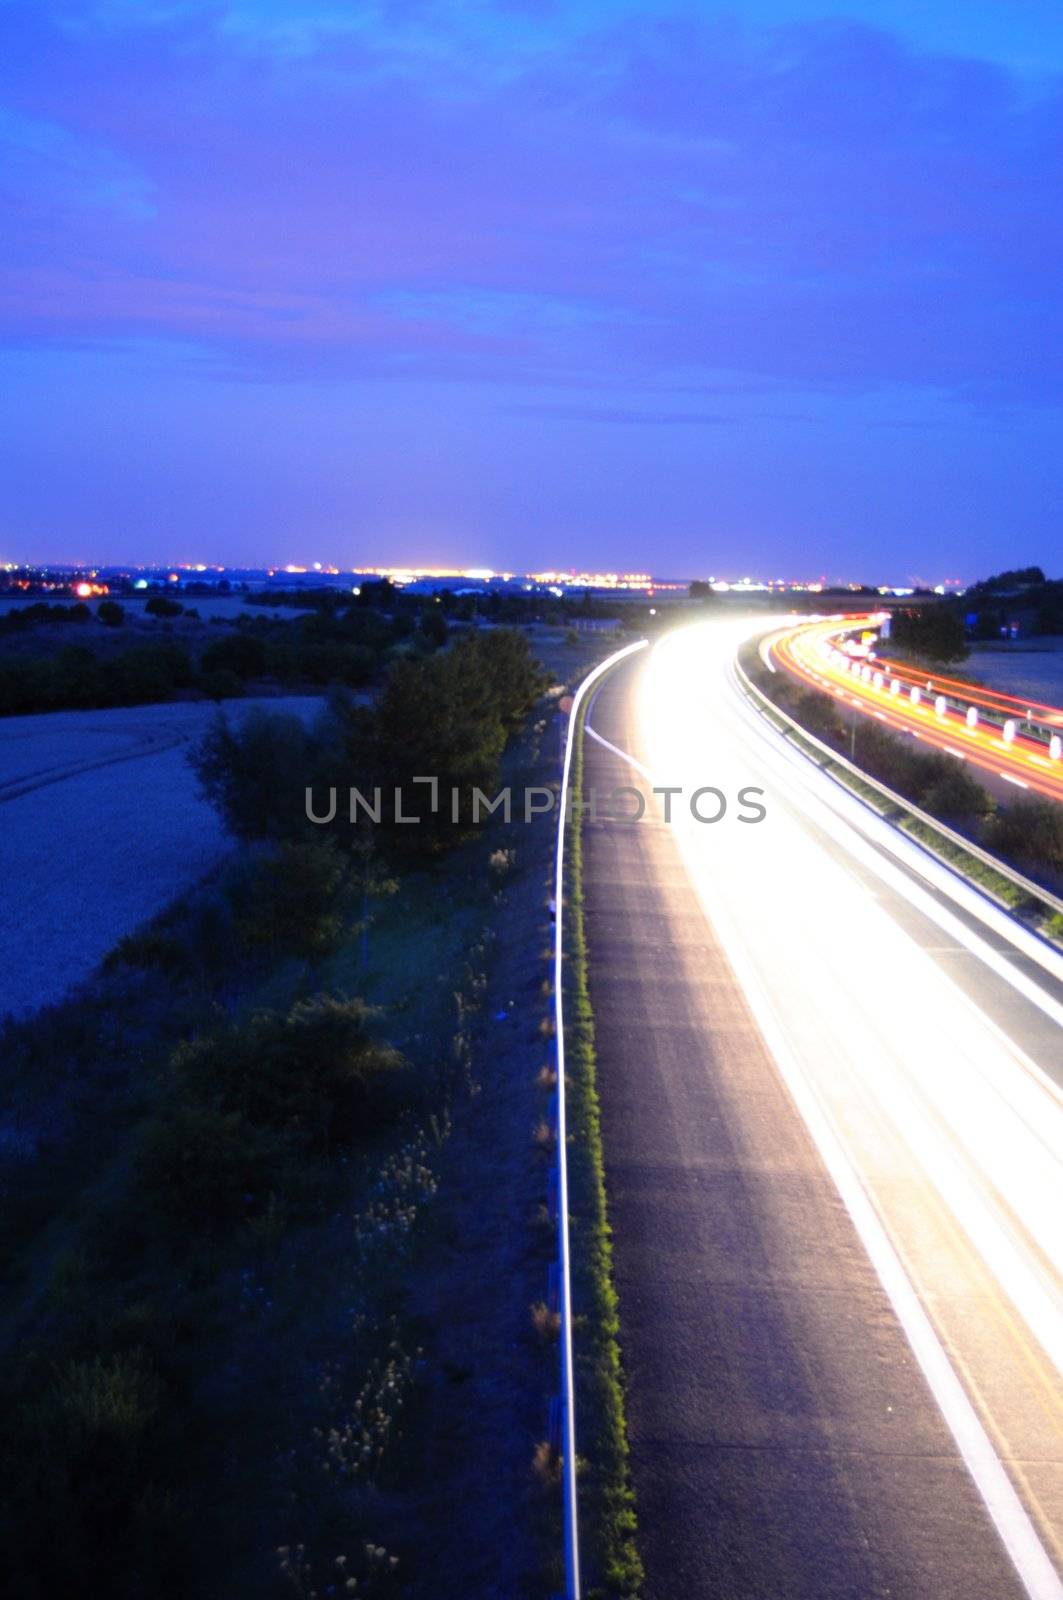 night traffic motion by gunnar3000